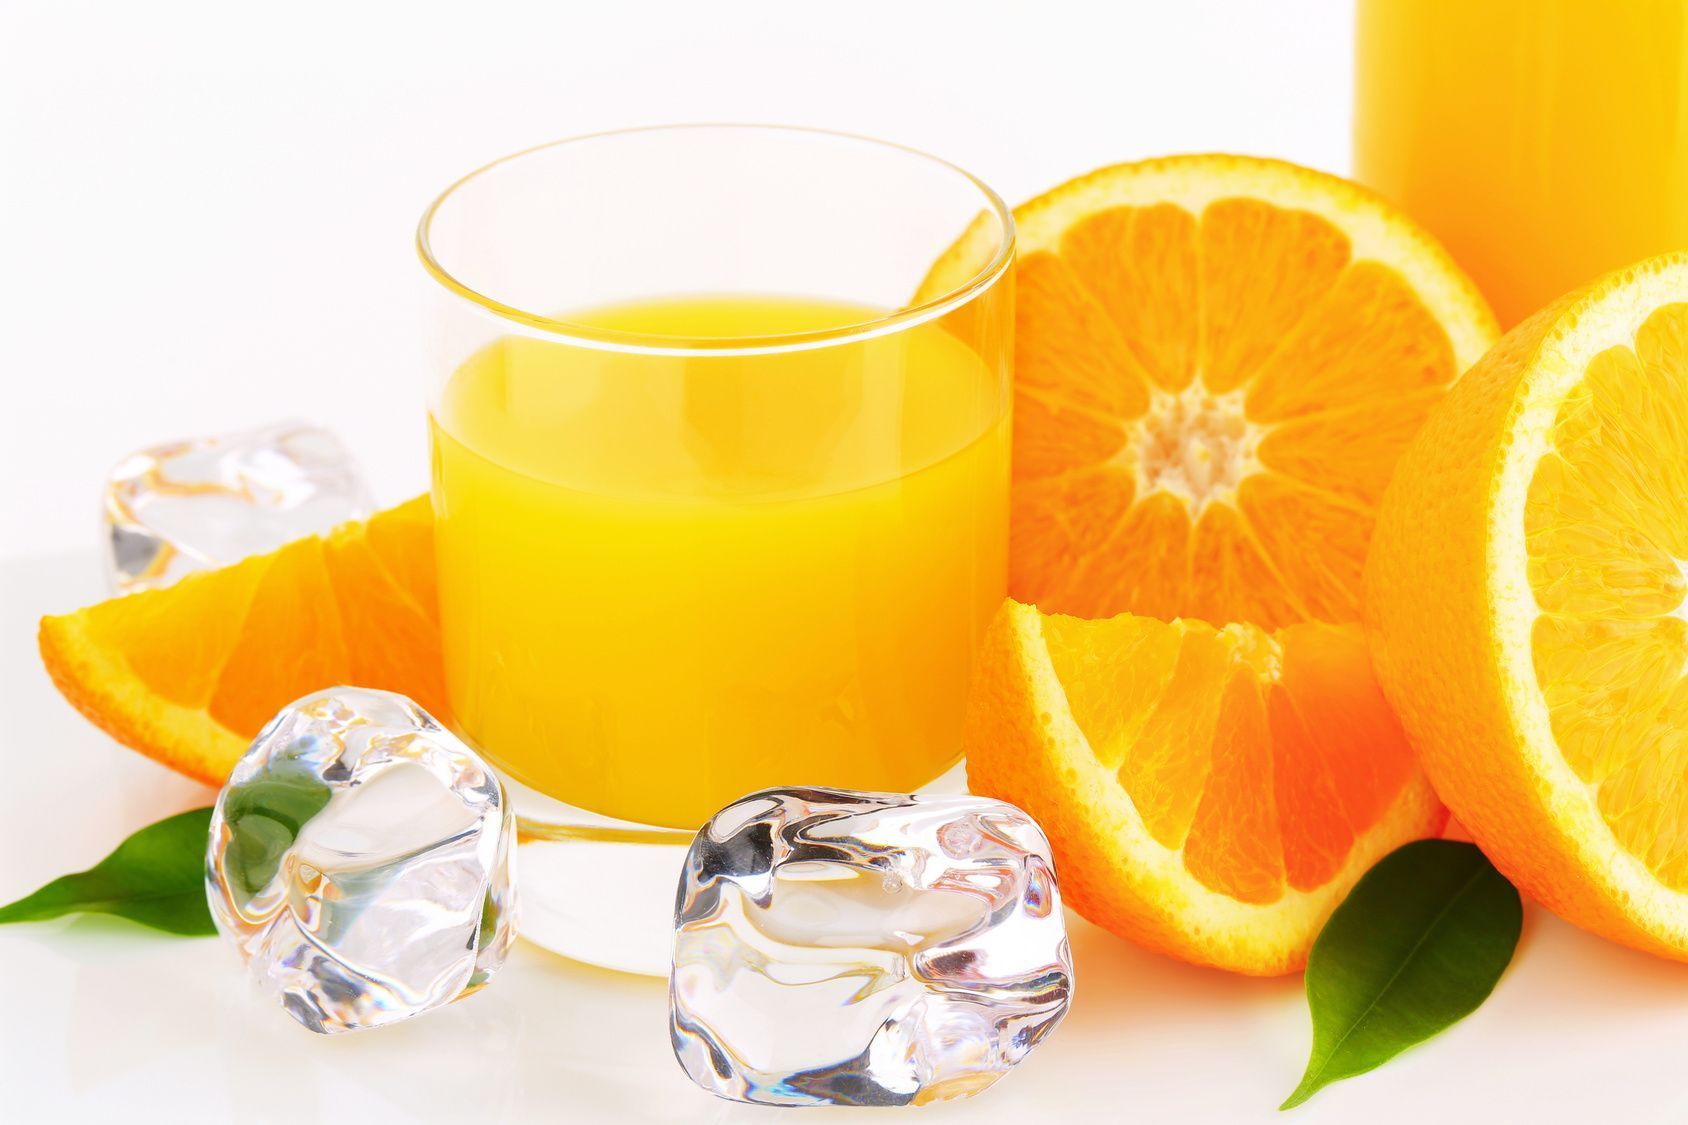 Rezepte für Säfte gibt es viele. Auf dem kulinarischen Sommer-Plan könnte auch ein Vitamin-Getränk mit Mandarinen oder Orangen, Ingwer und Eiswürfeln stehen.